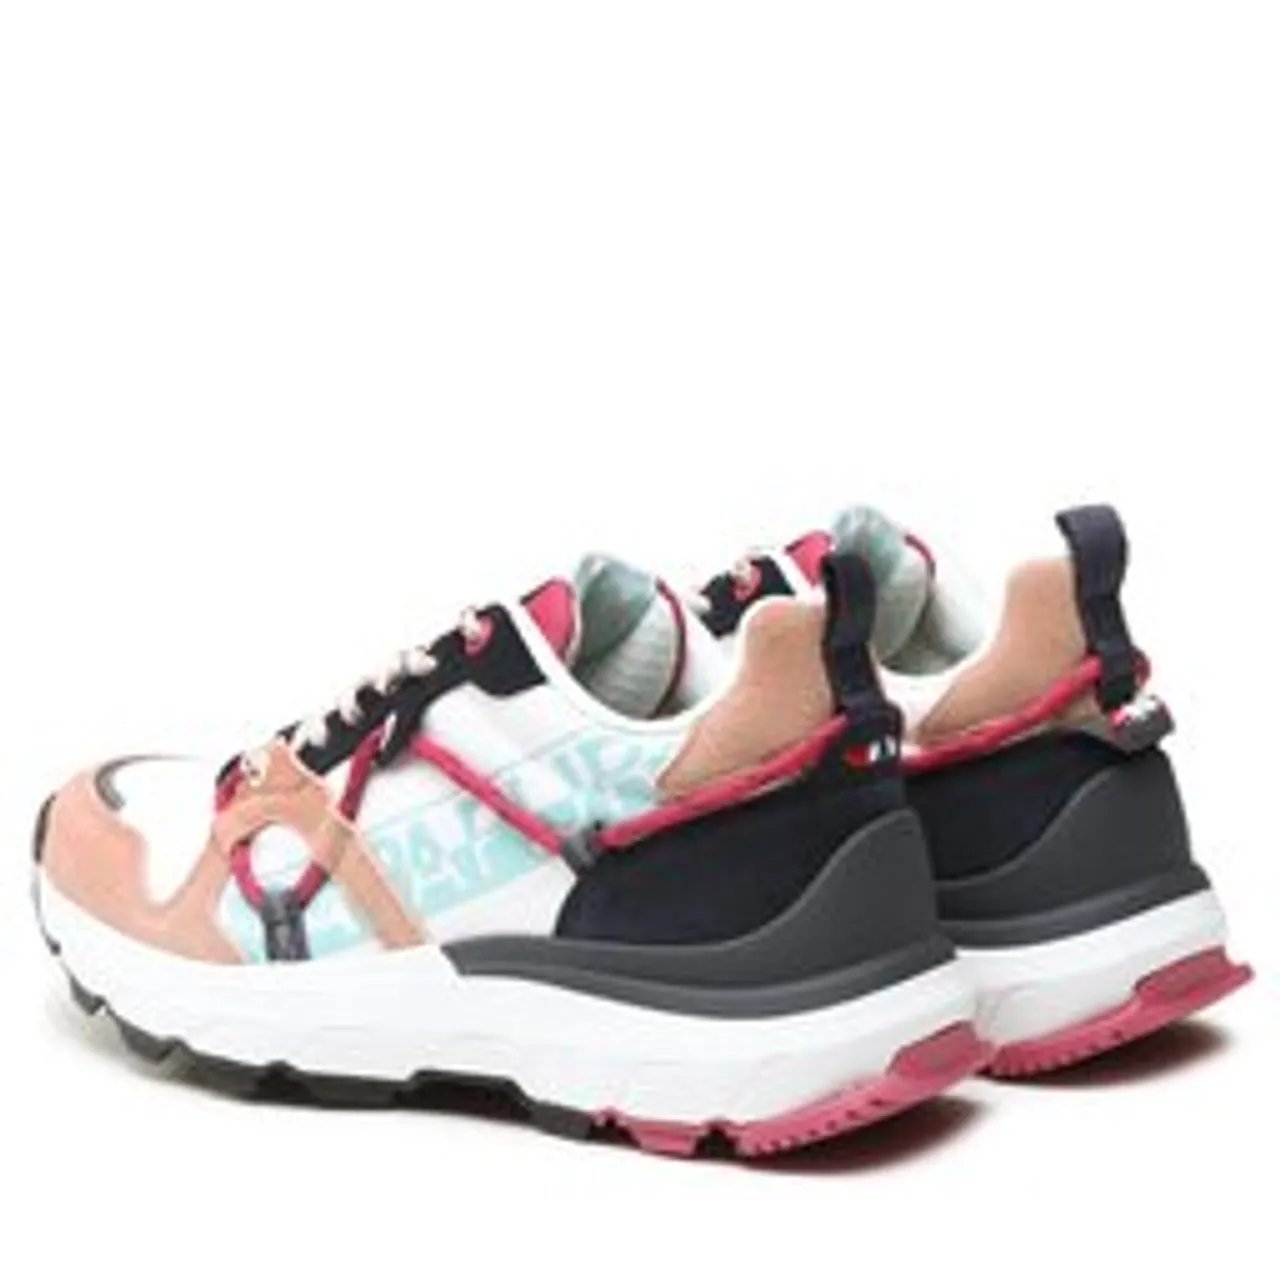 Sneakers Napapijri NP0A4HKN White/Pink/Blue 0A1